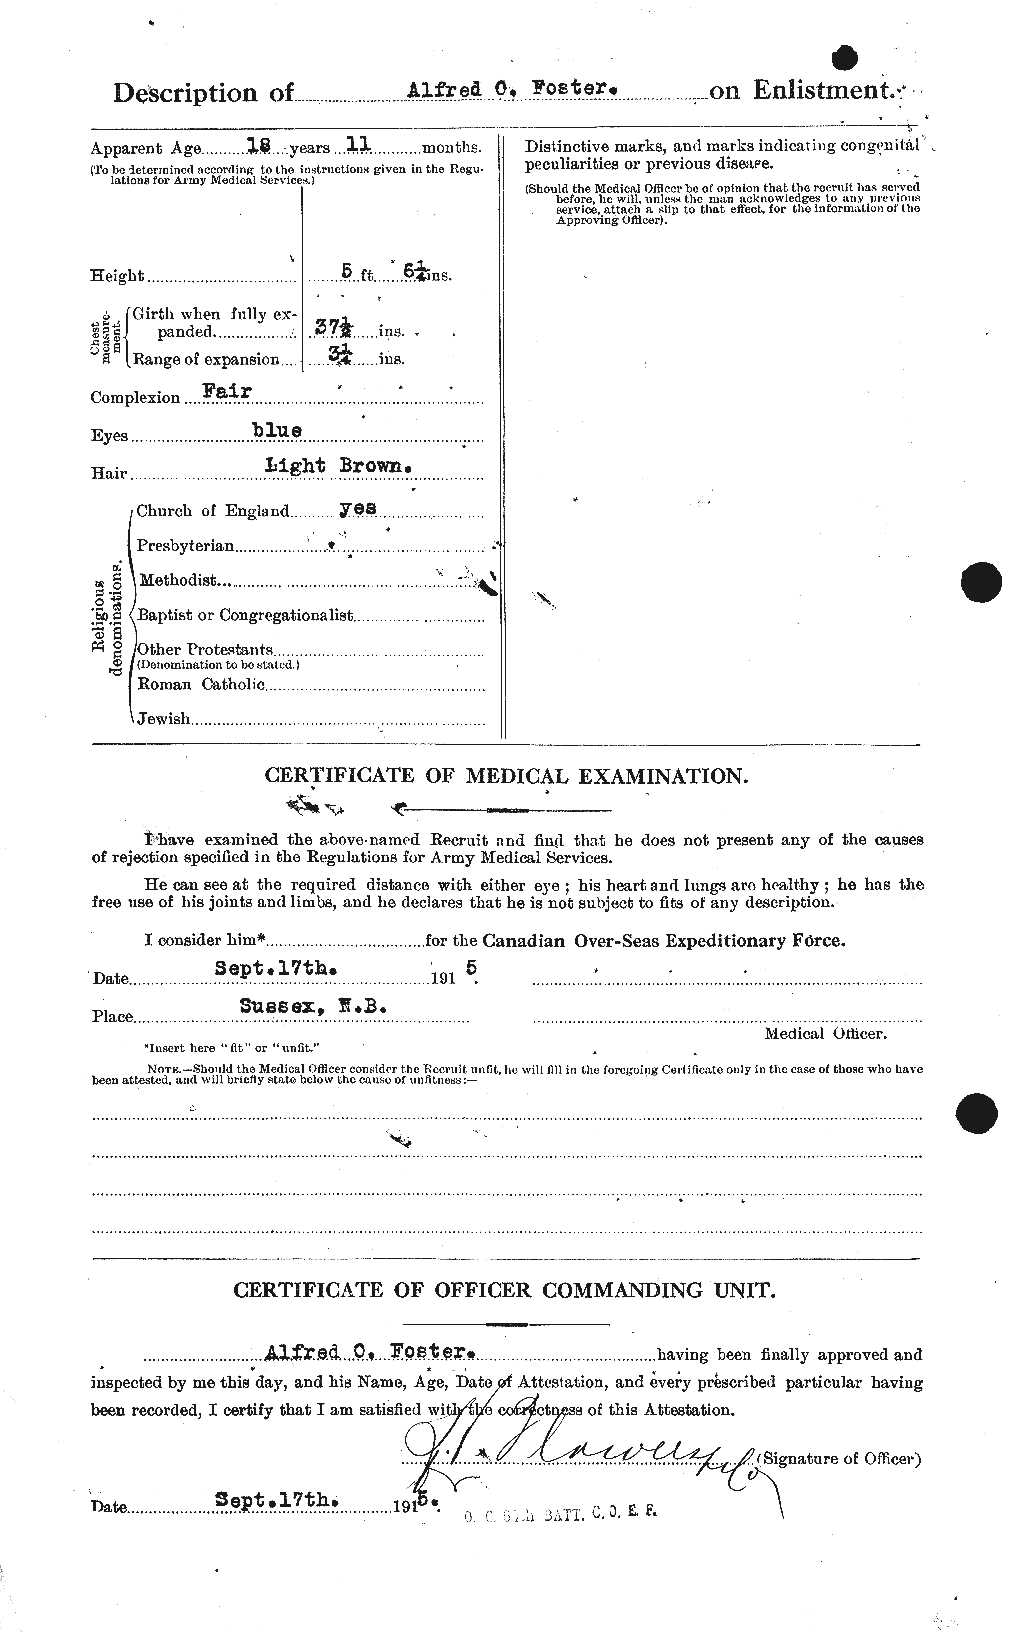 Dossiers du Personnel de la Première Guerre mondiale - CEC 330451b